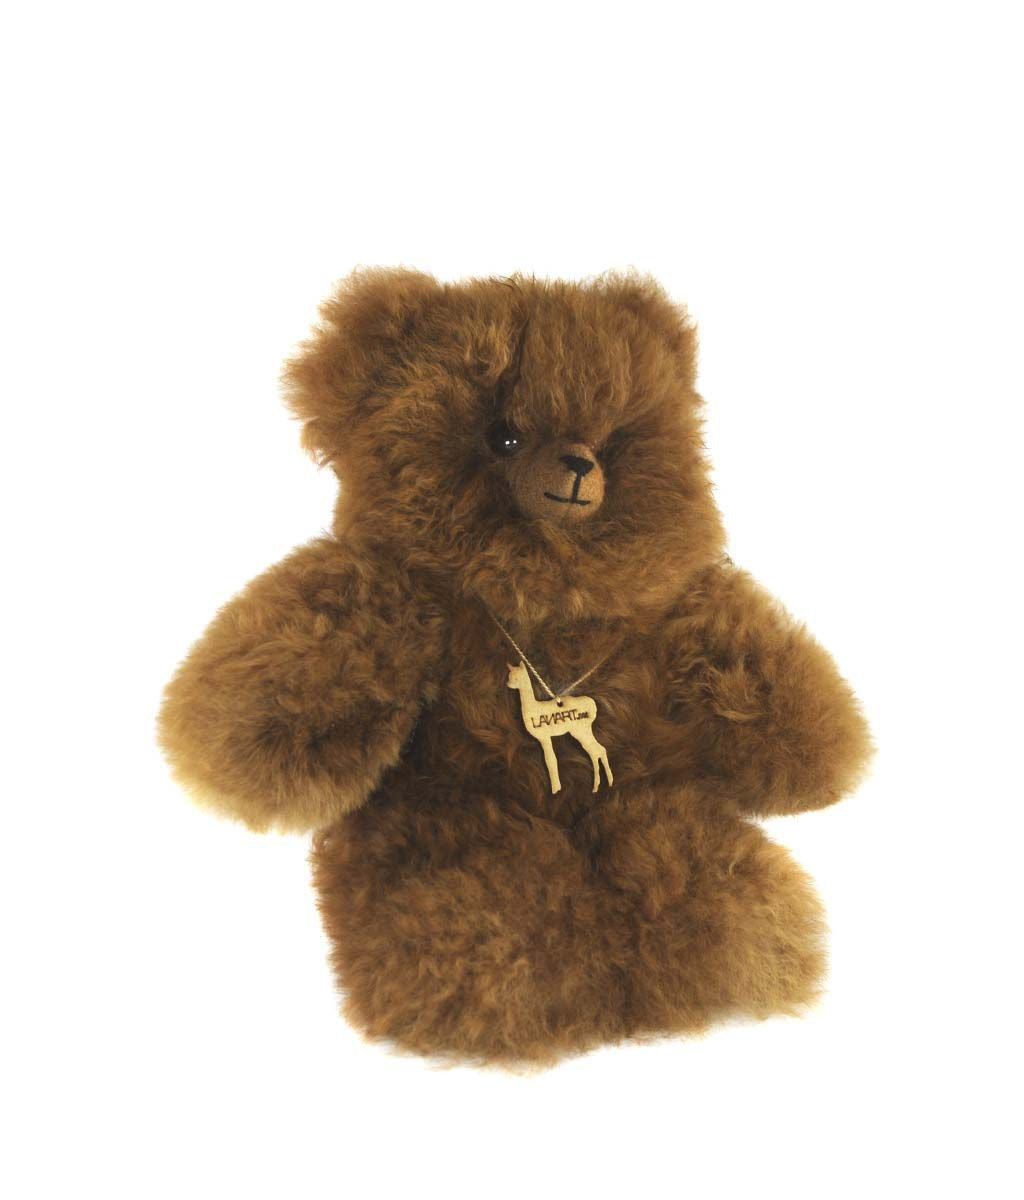 Cuddly Alpaca Heirloom Teddy Bear 11"